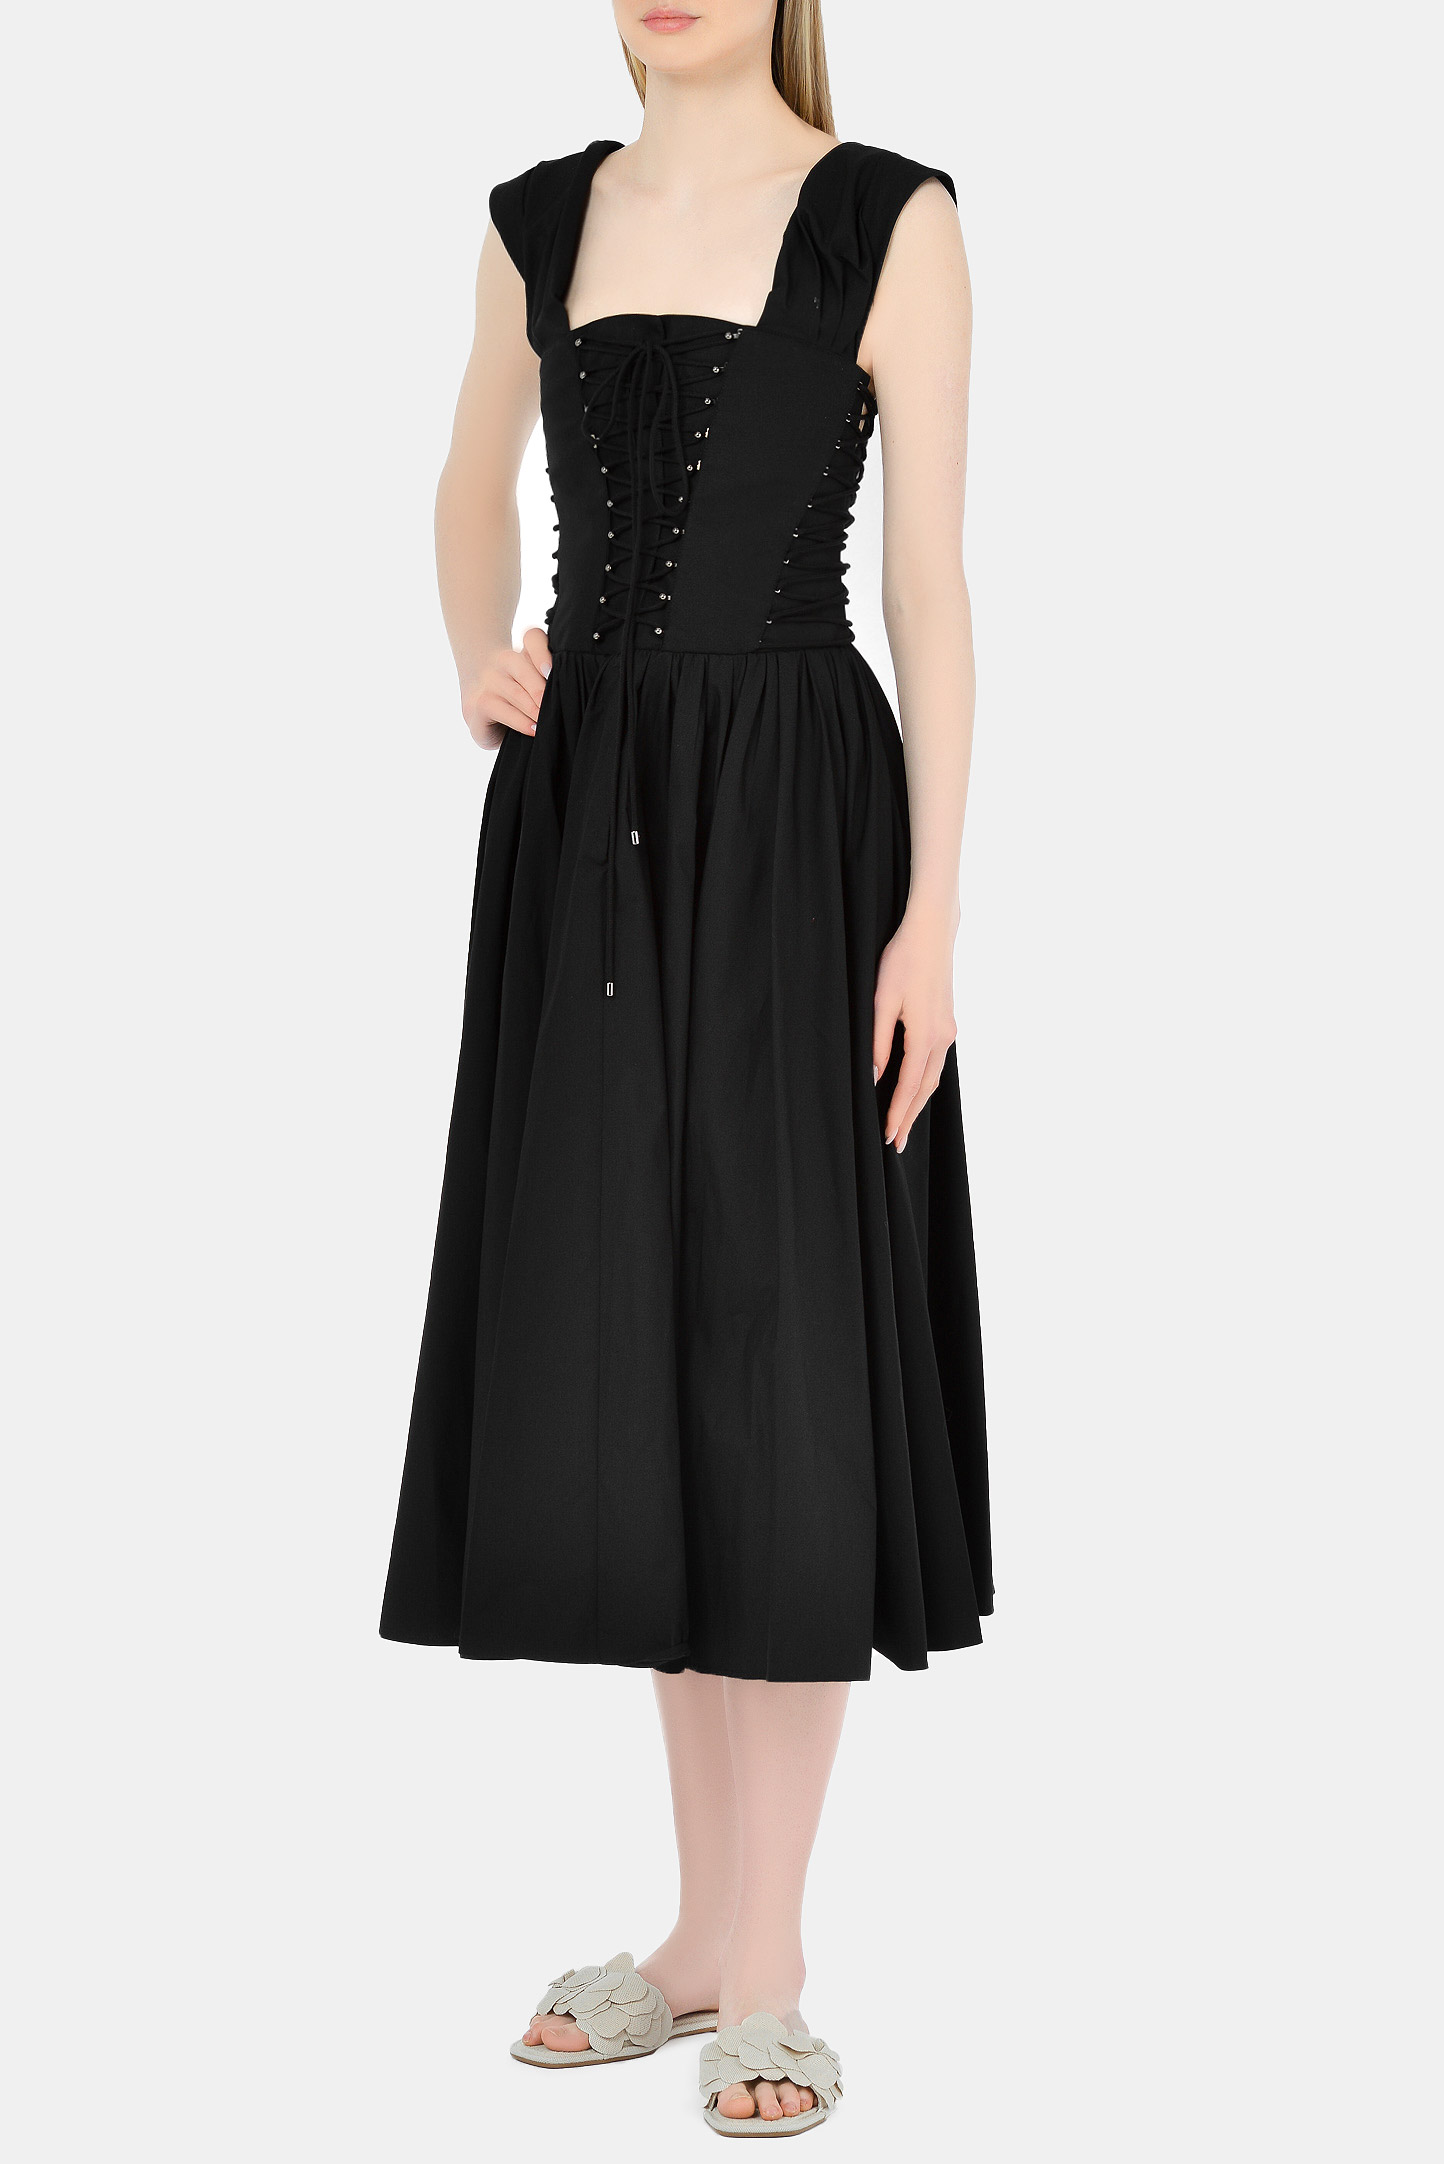 Платье PHILOSOPHY DI LORENZO SERAFINI A0412-2119, цвет: Черный, Женский